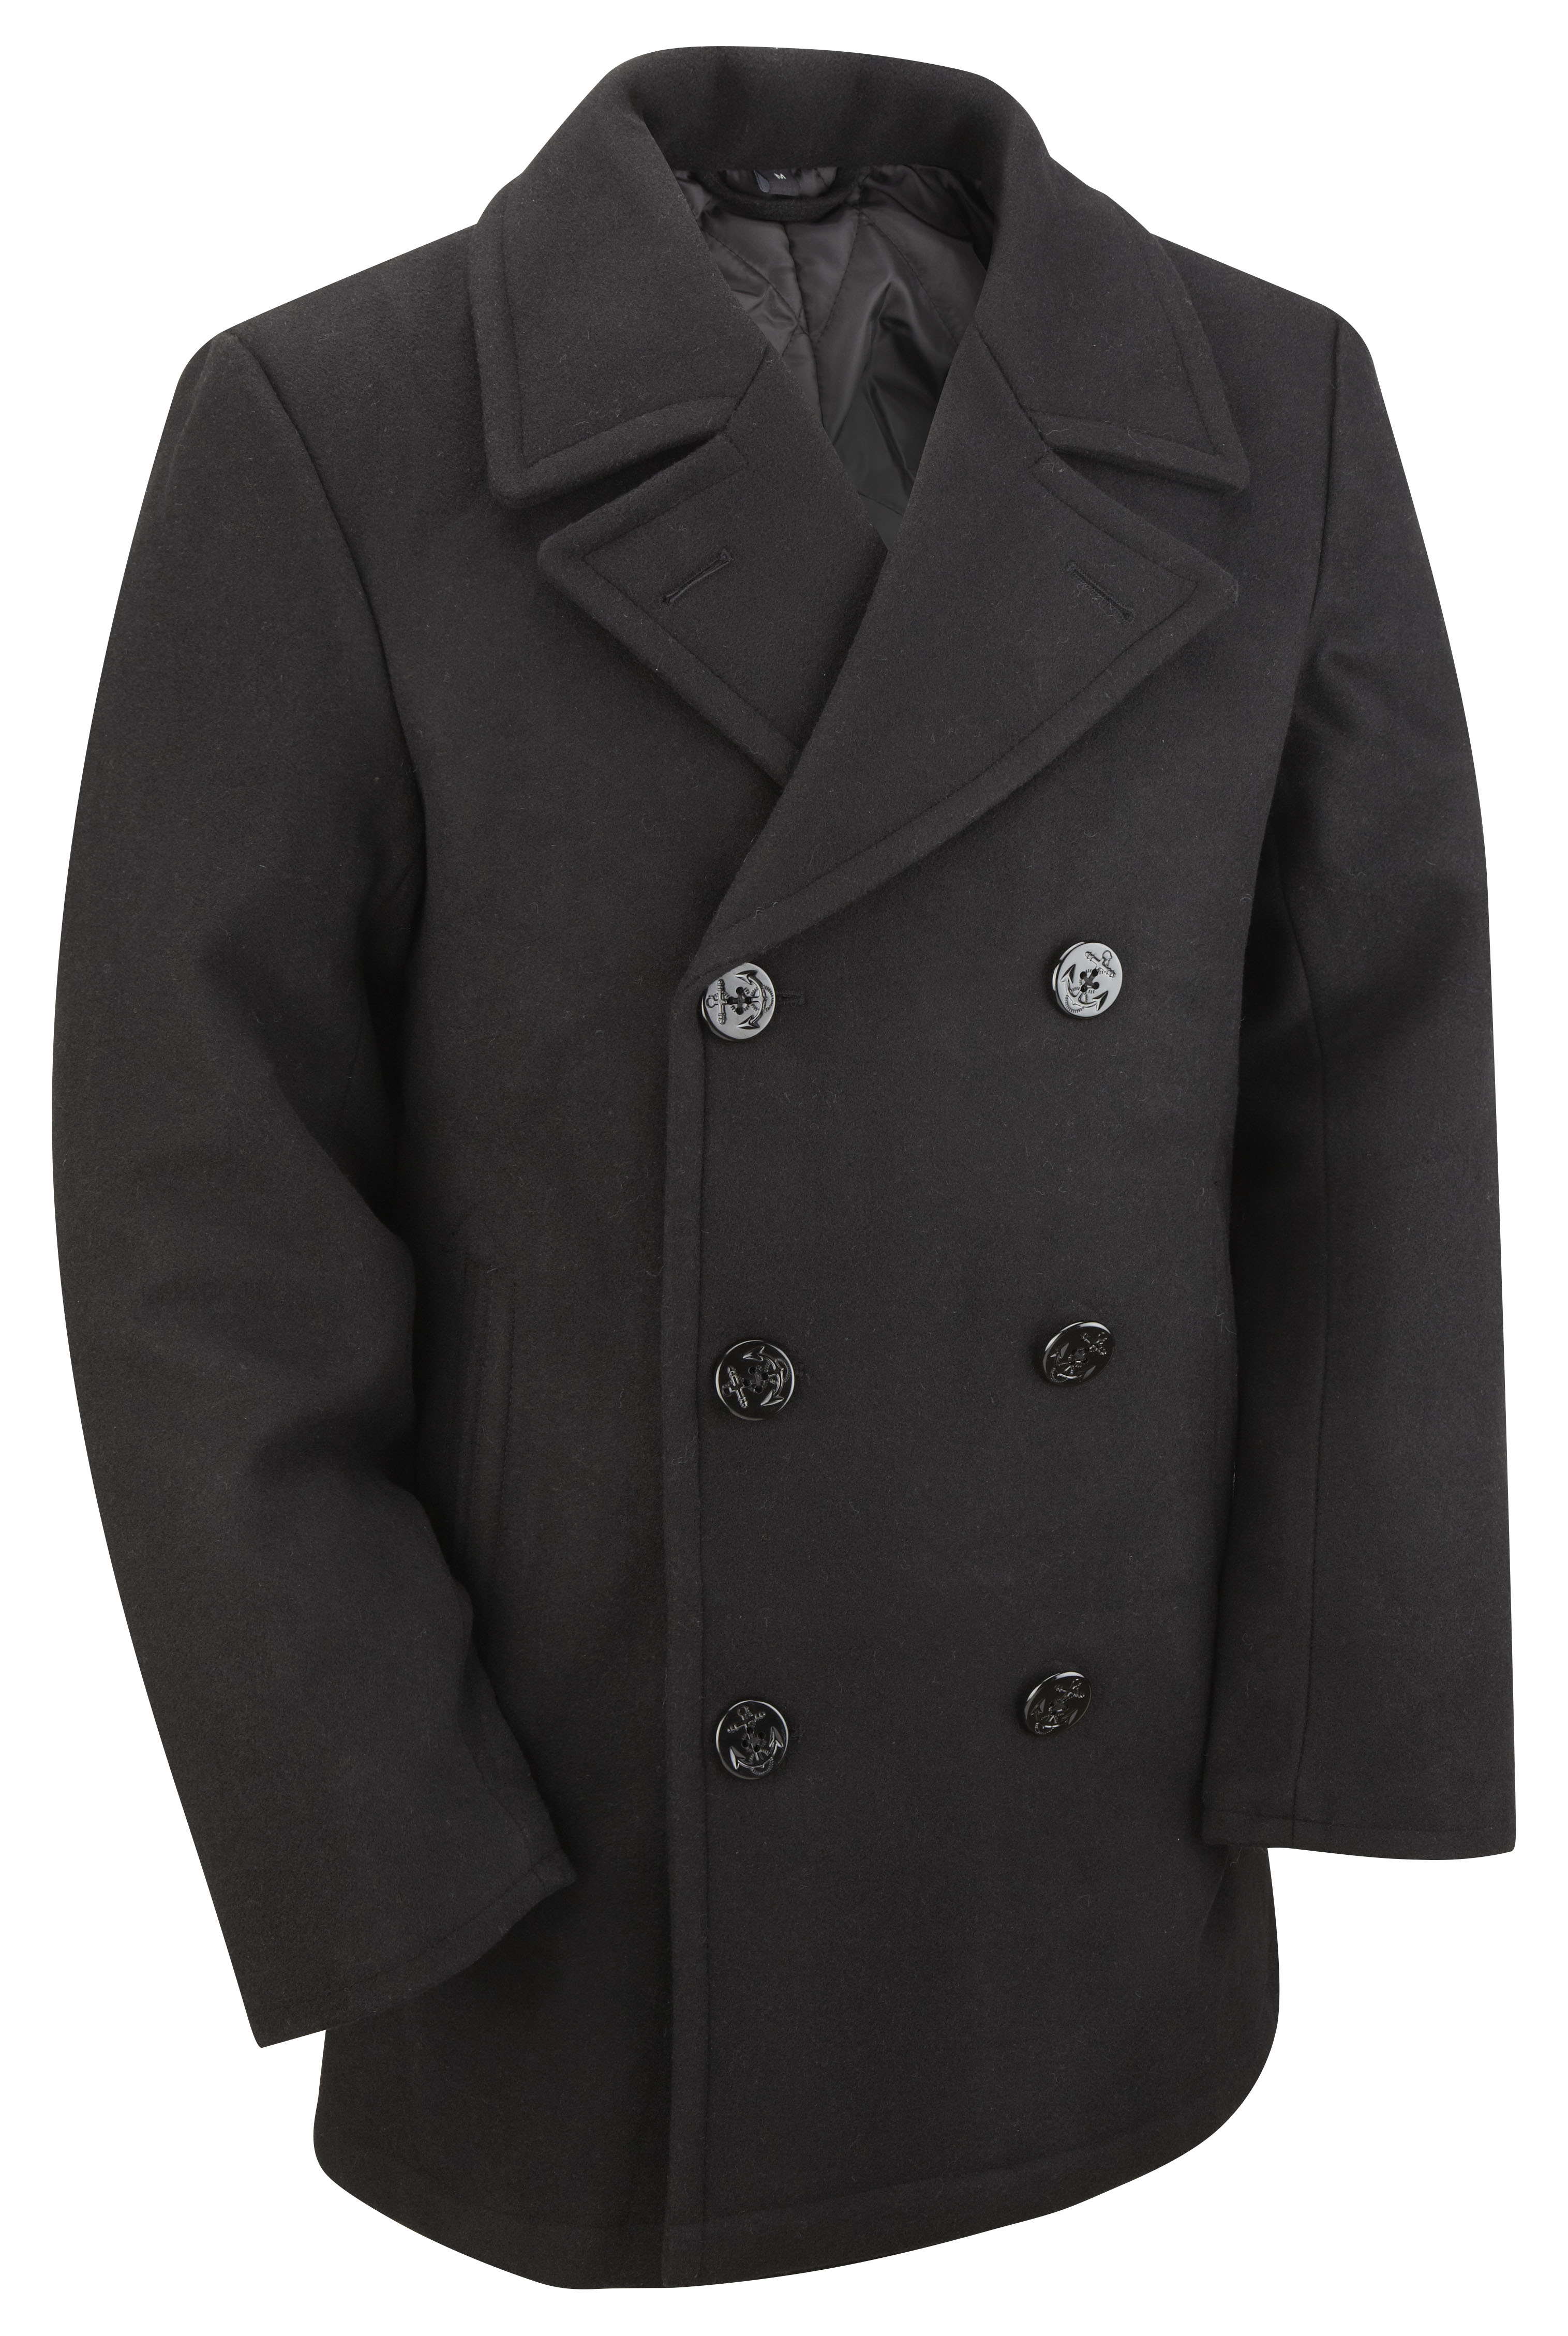 Us Navy Style Vintage Wool Winter Pea Coat